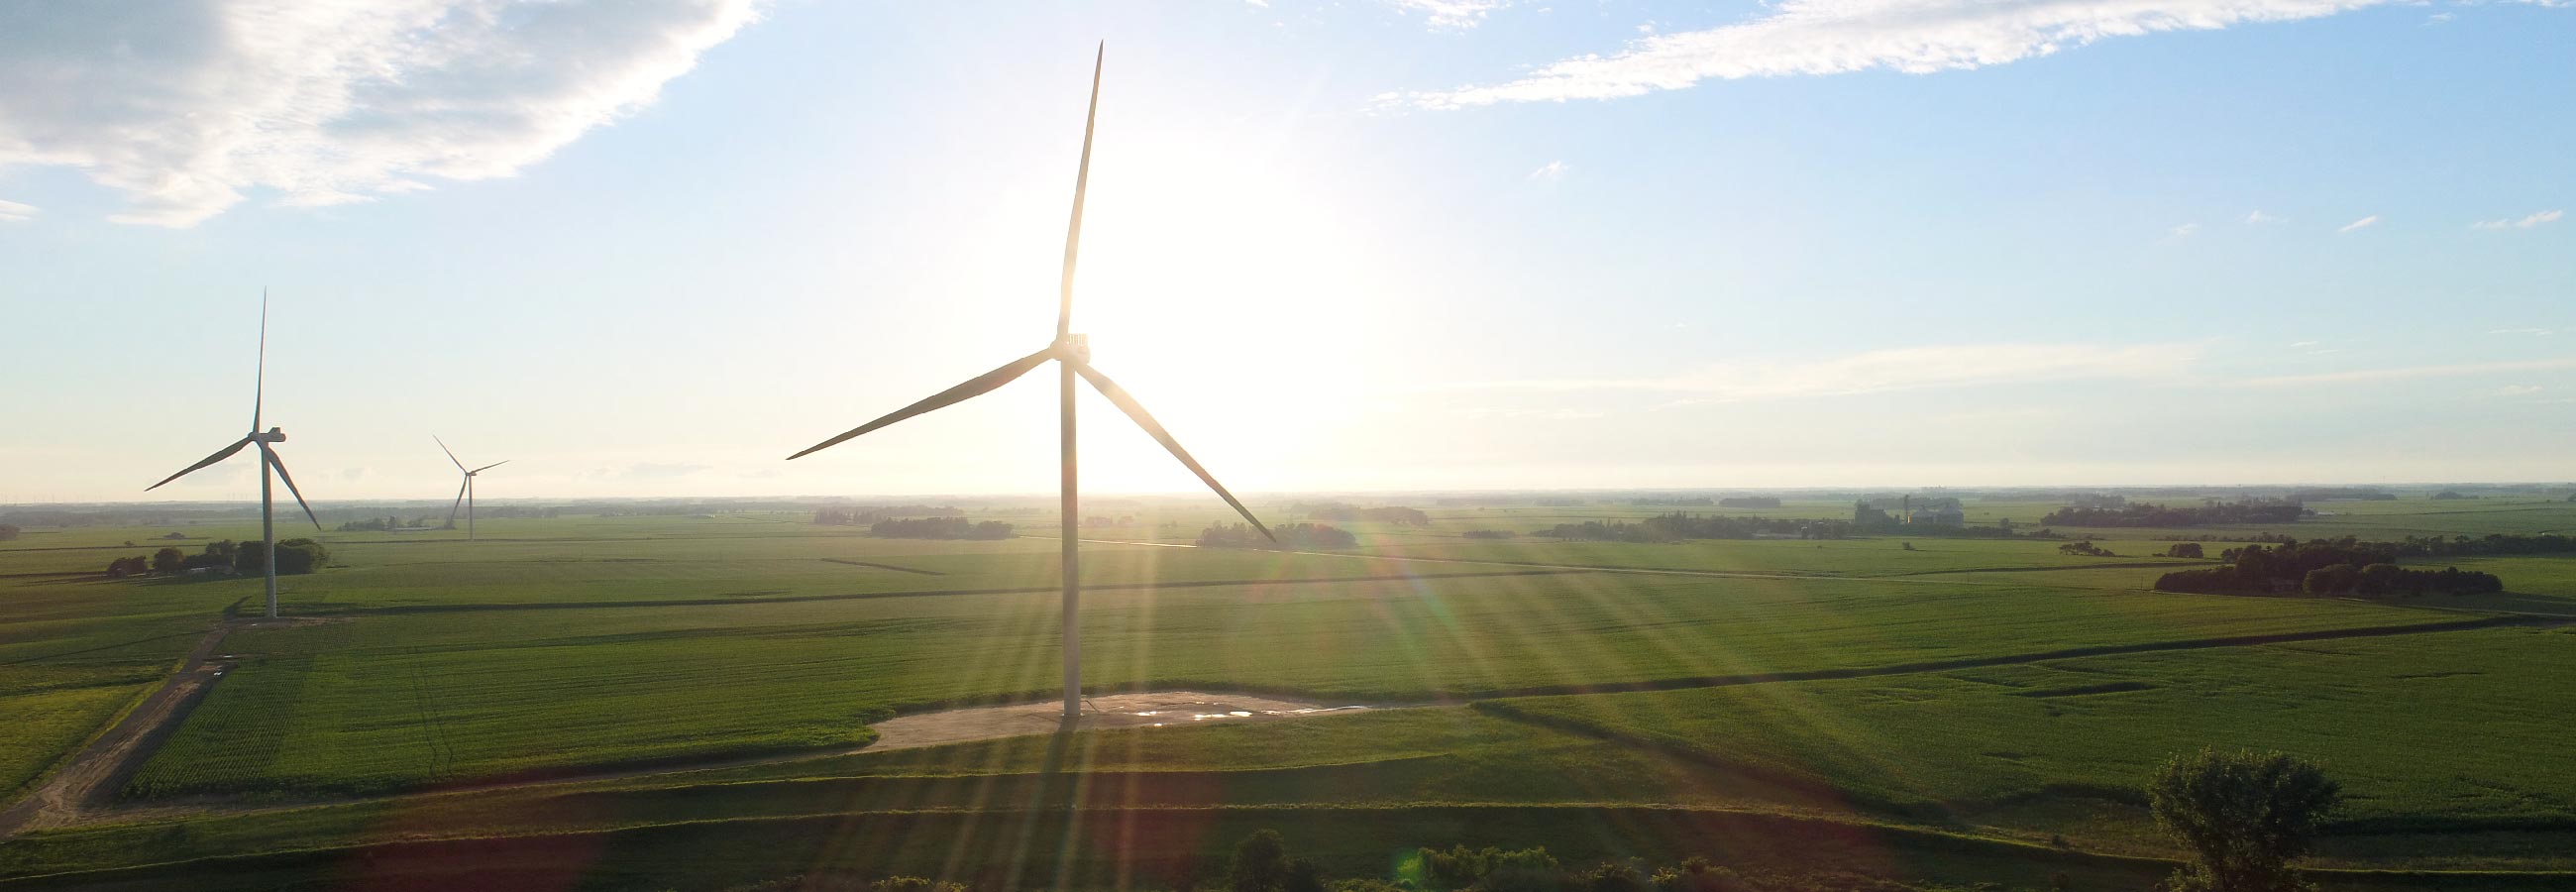 Iowa’s renewable energy